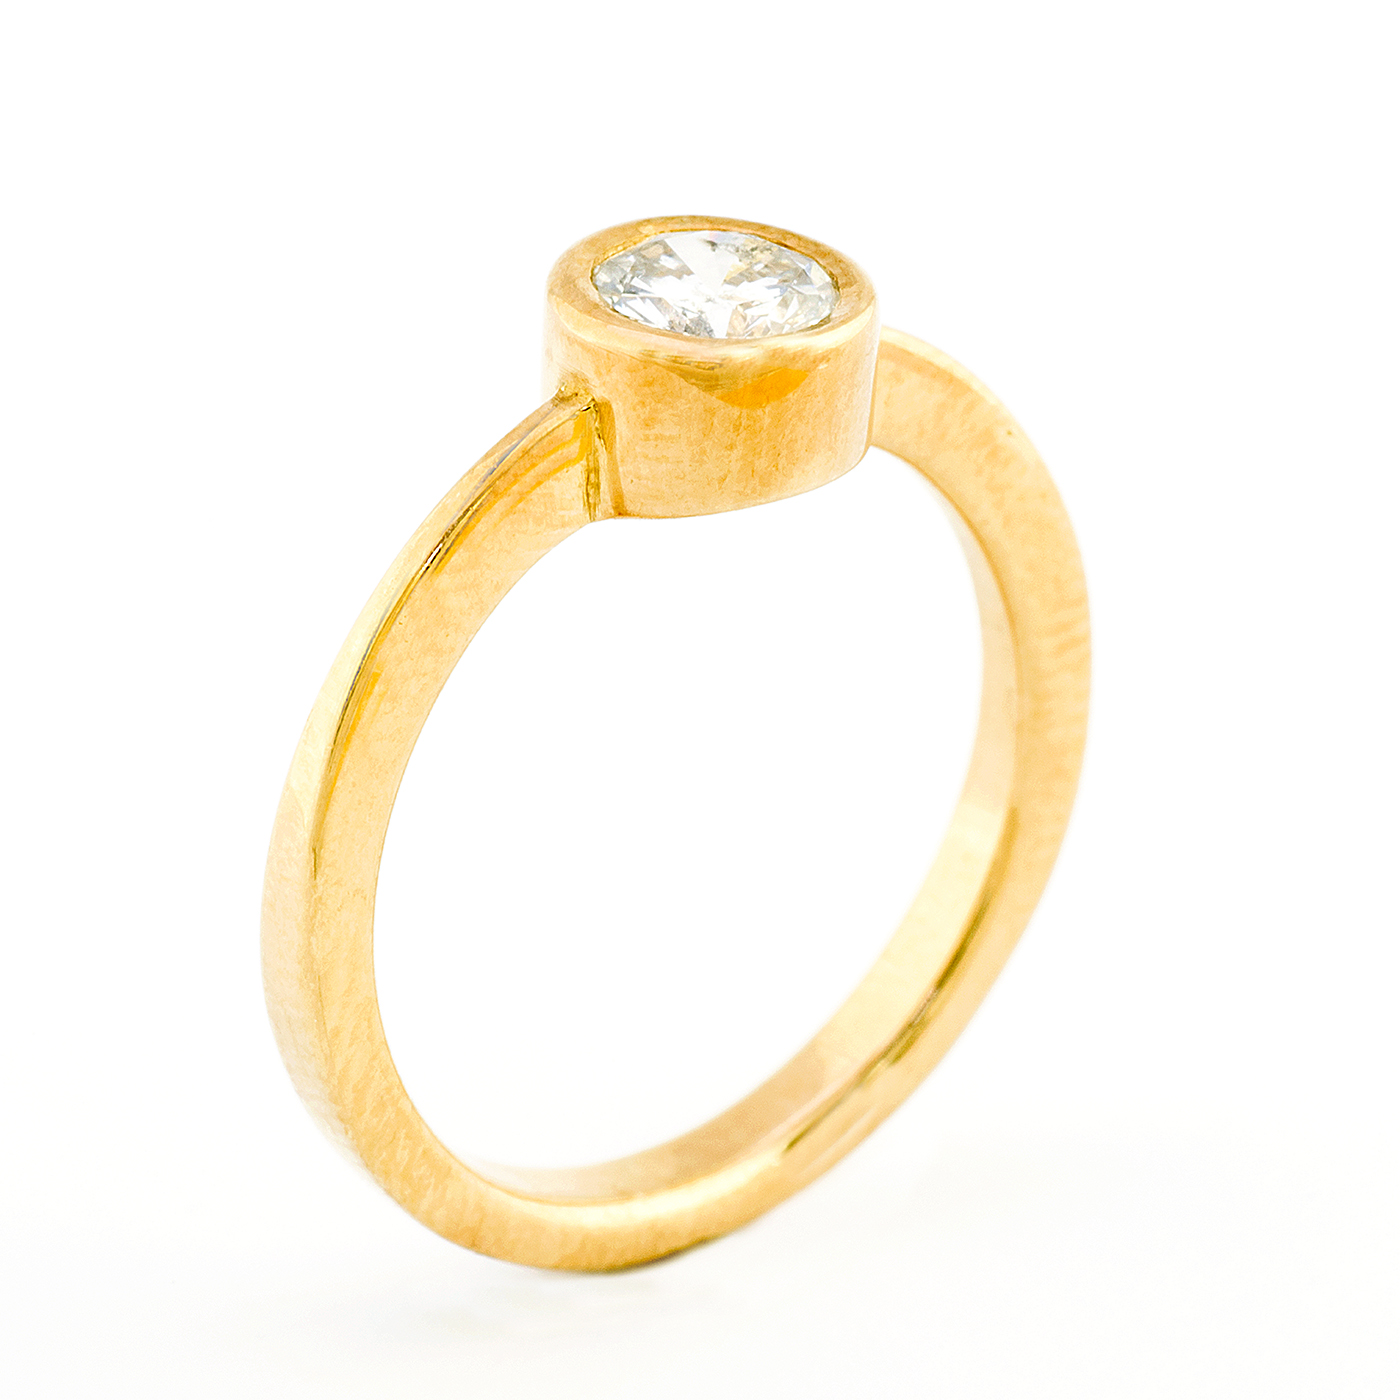 Anillo en Oro de 18k. con Diamante natural talla Brillante de 0,67 ct. (J/I1). Certificado IGE.